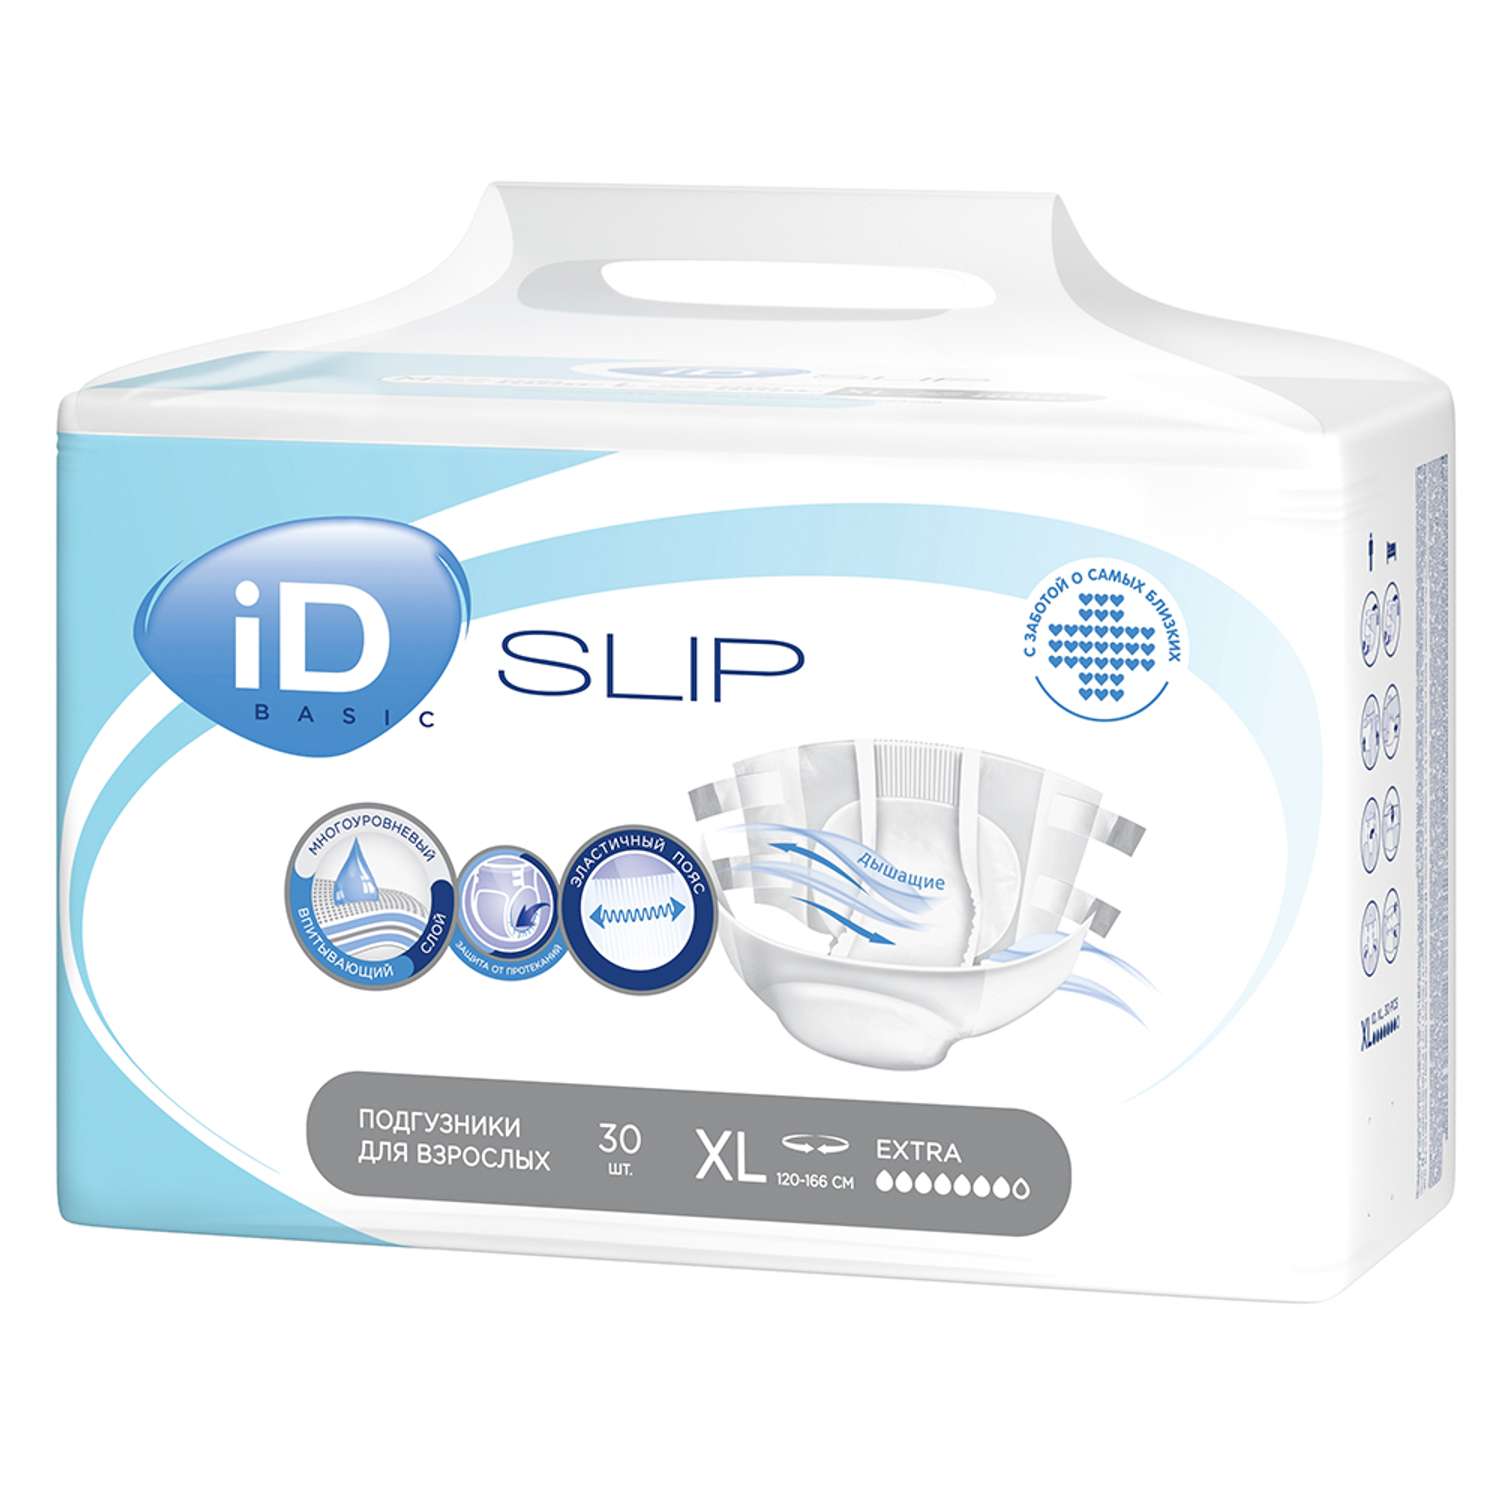 Подгузники для взрослых iD Slip Basic XL 30 шт 2800мл - фото 1